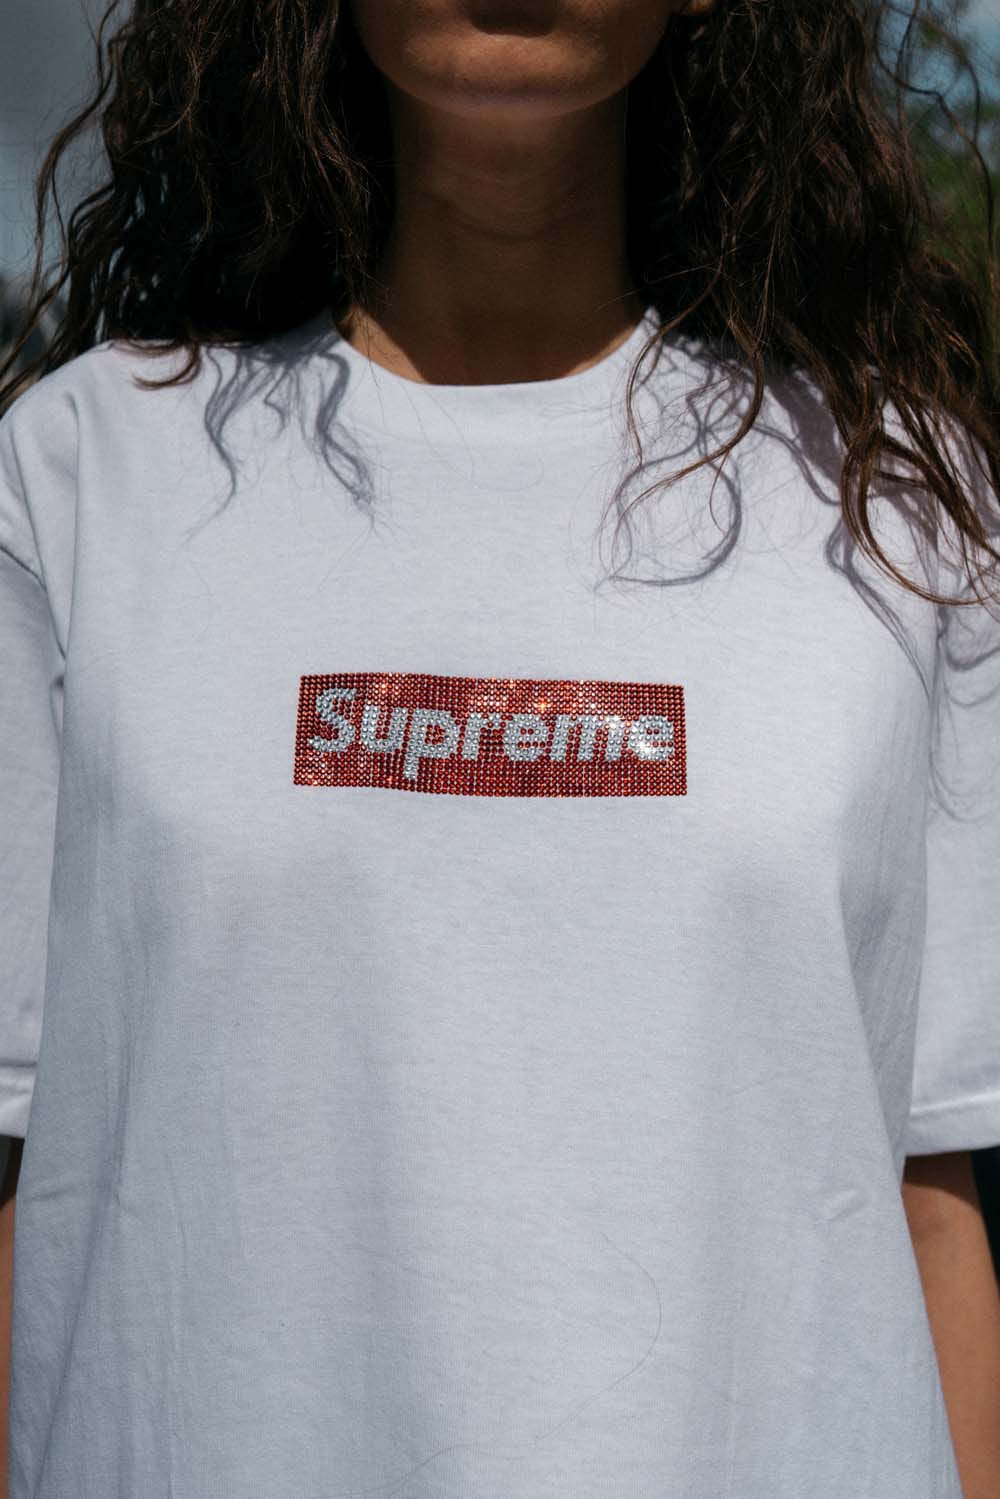 直営通販サイトです Supreme Tシャツ Swarovski Tシャツ/カットソー(半袖/袖なし)